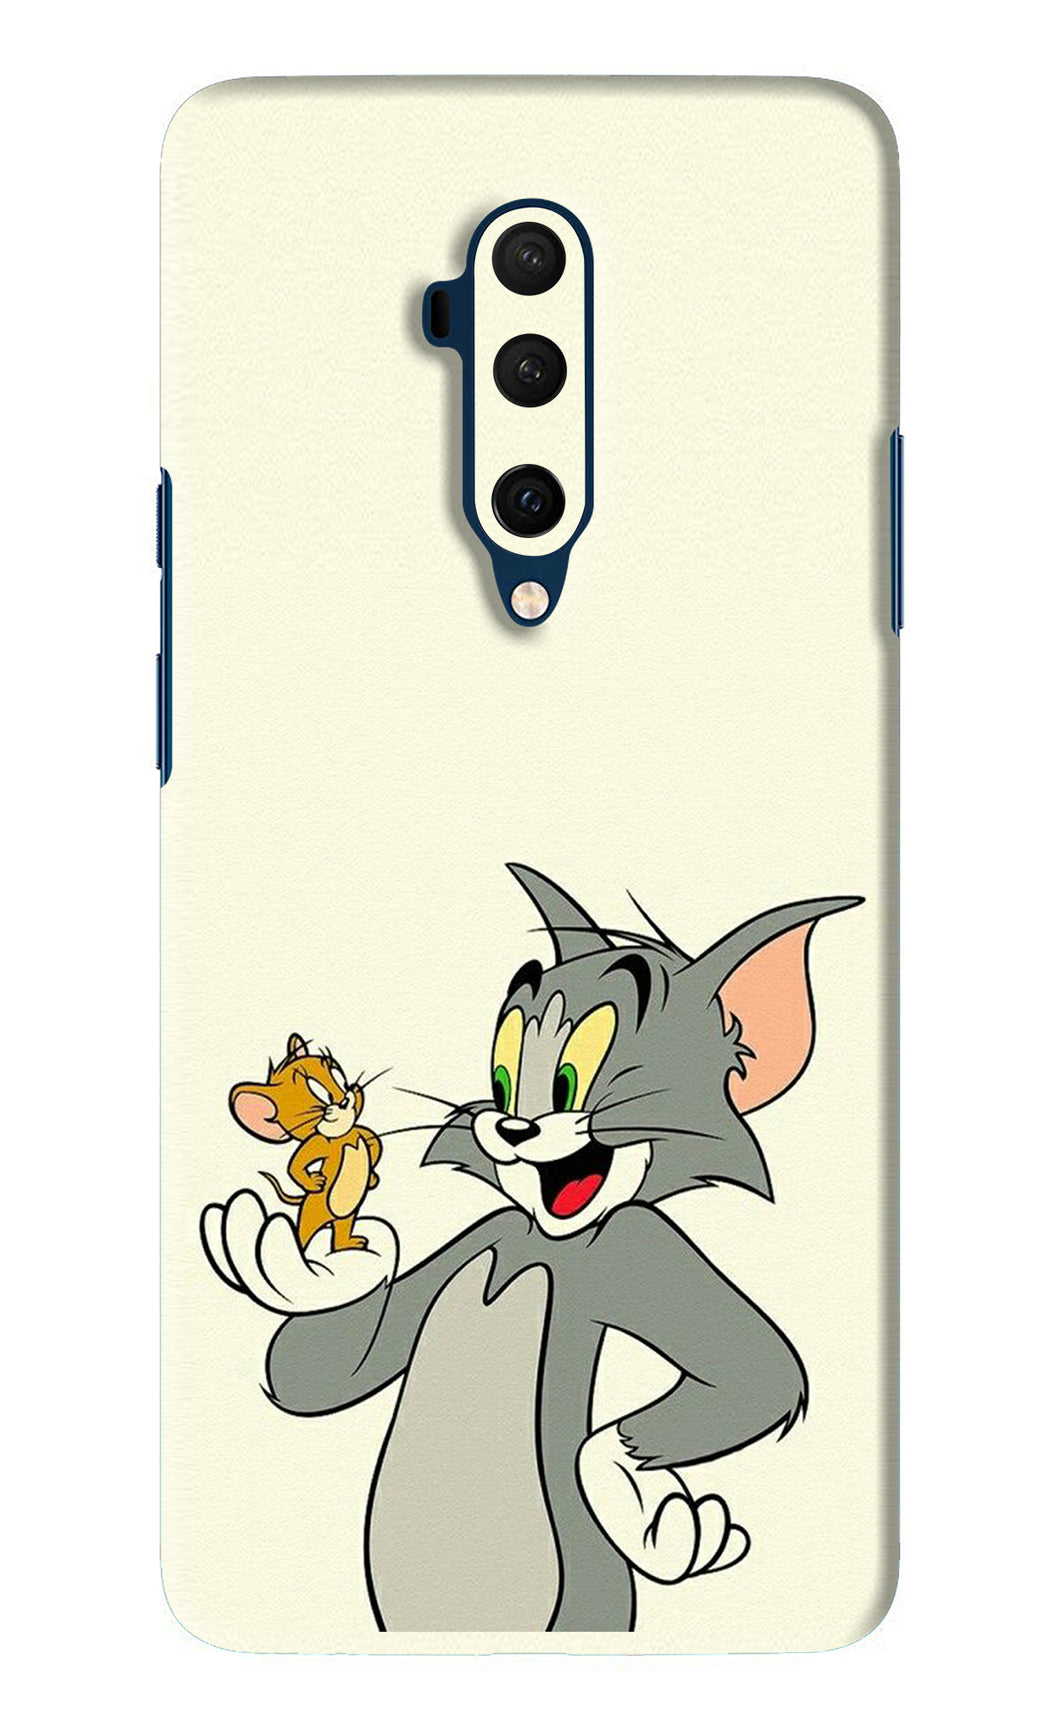 Tom & Jerry OnePlus 7T Pro Back Skin Wrap